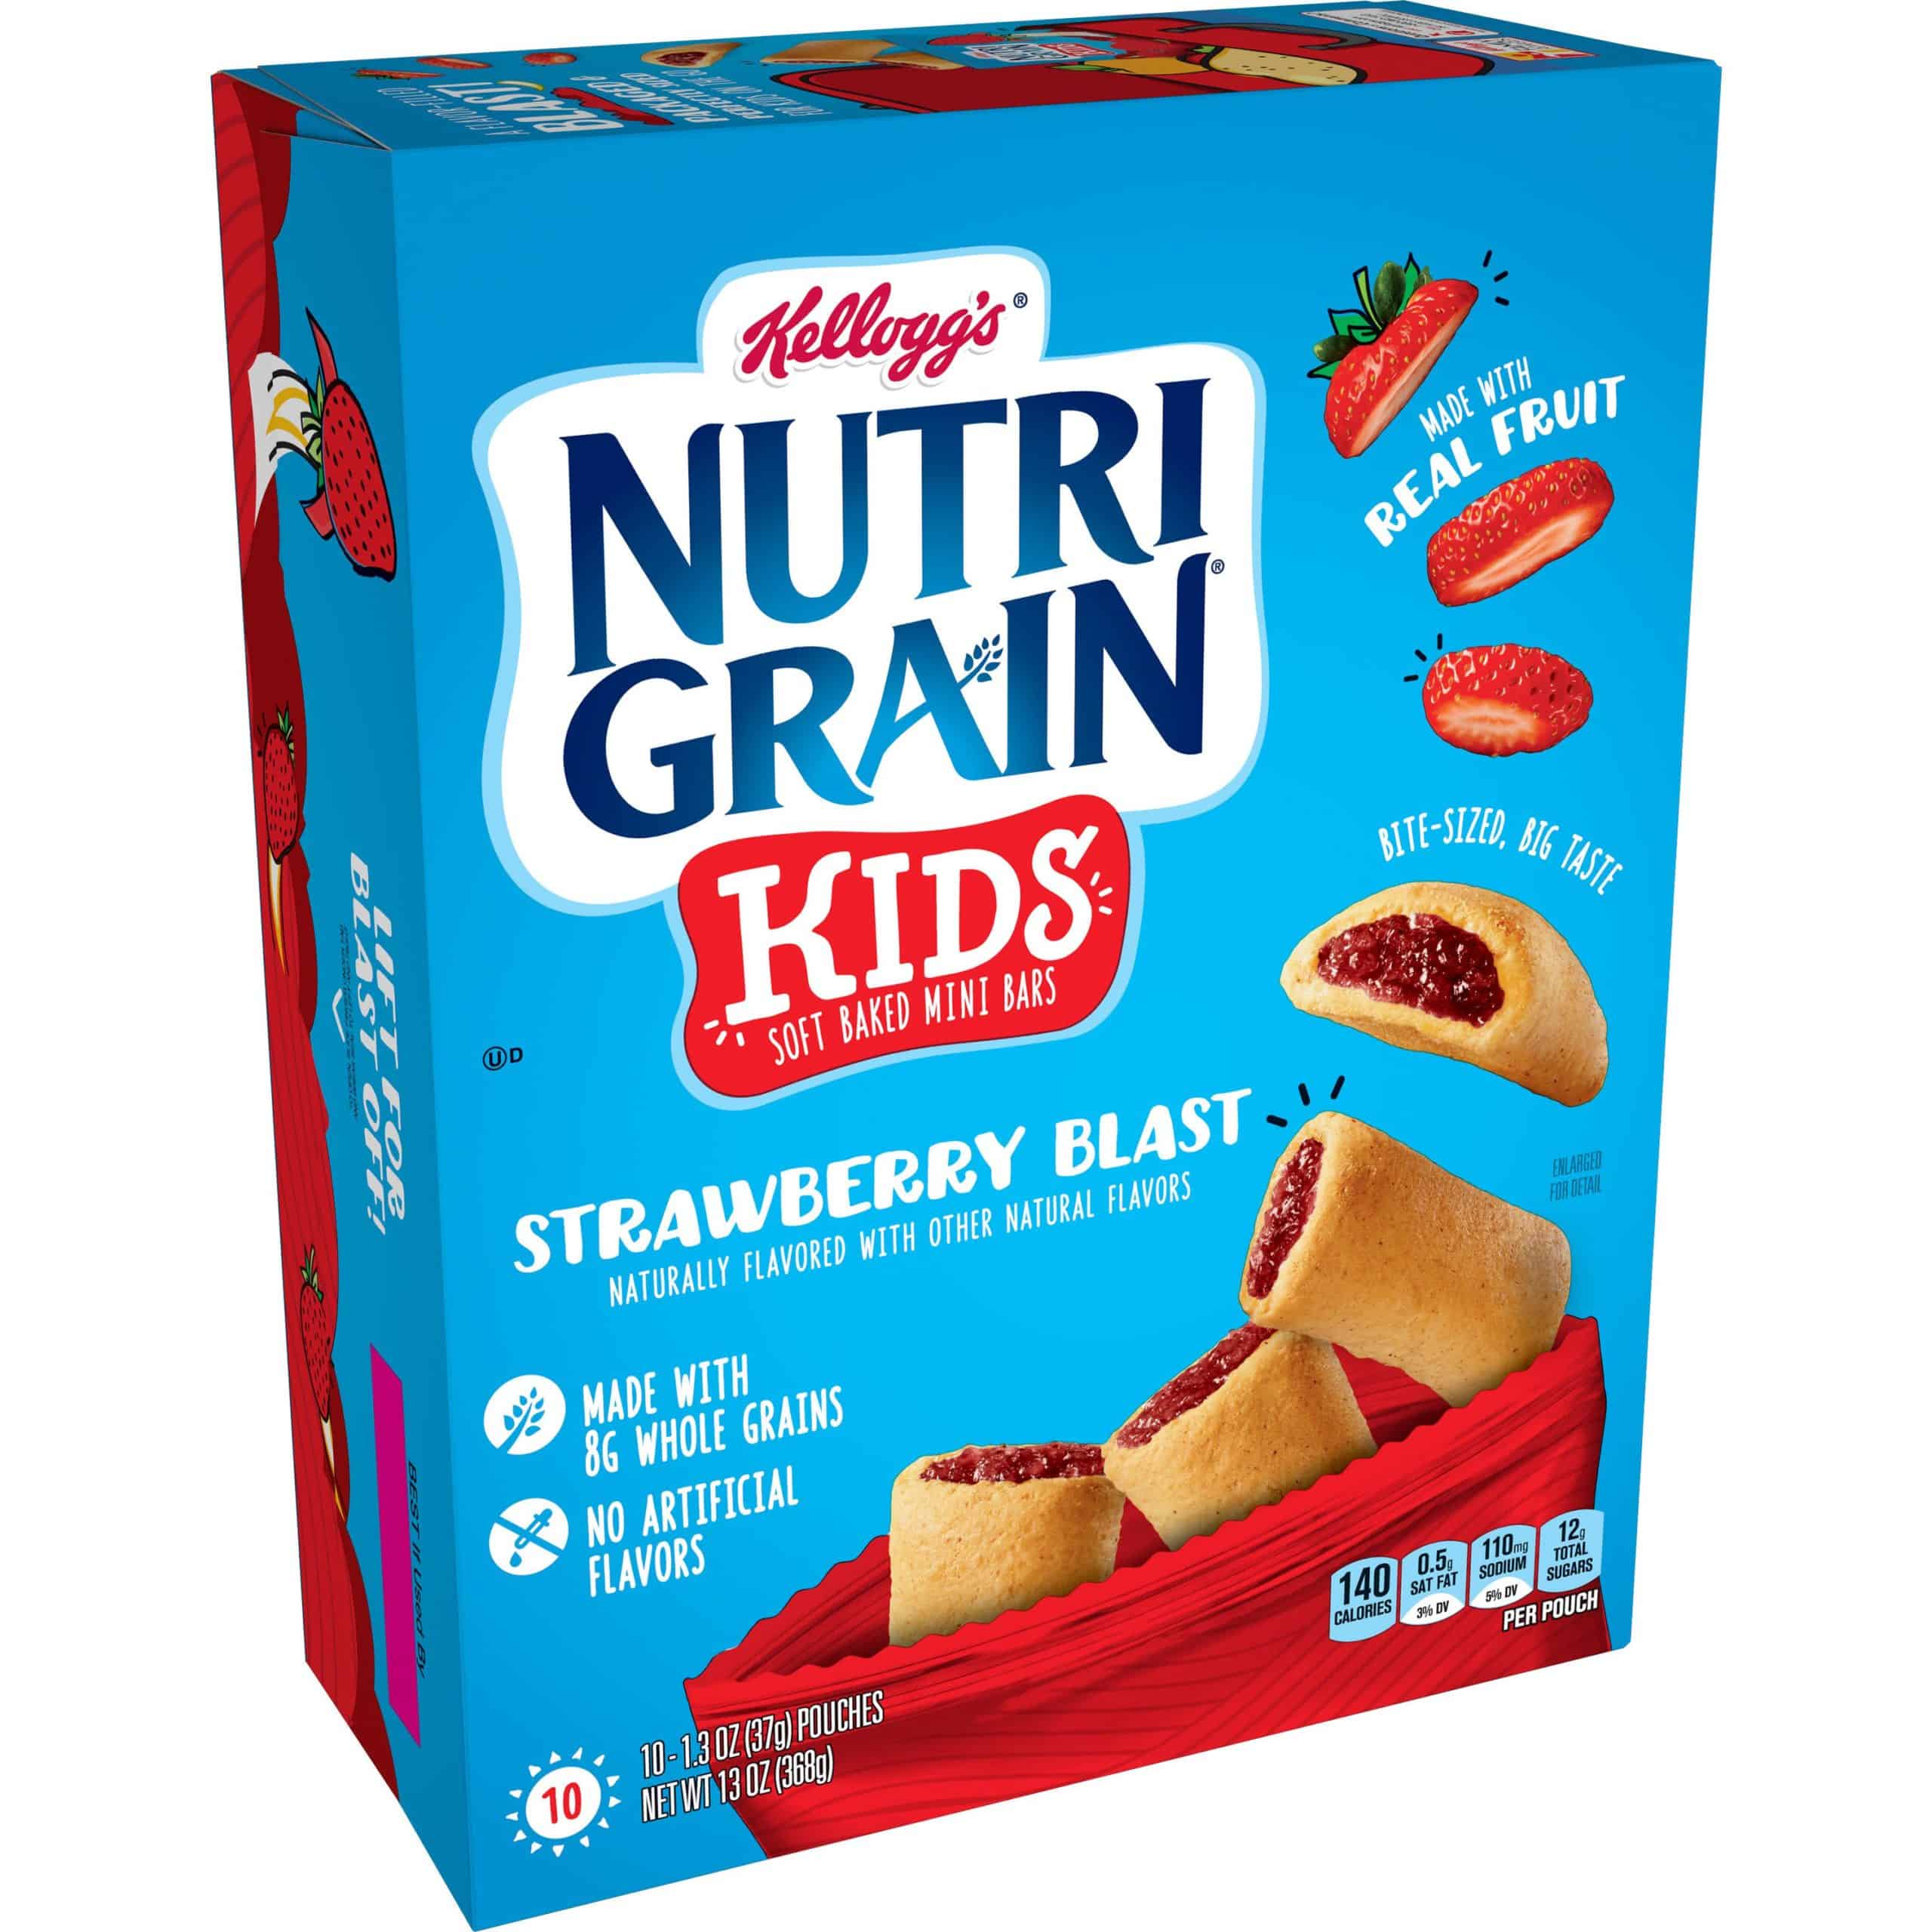 Kellogg's Nutri-Grain Kids, Soft Baked Mini Bars, Strawberry Blast, 10 Ct, 13 Oz